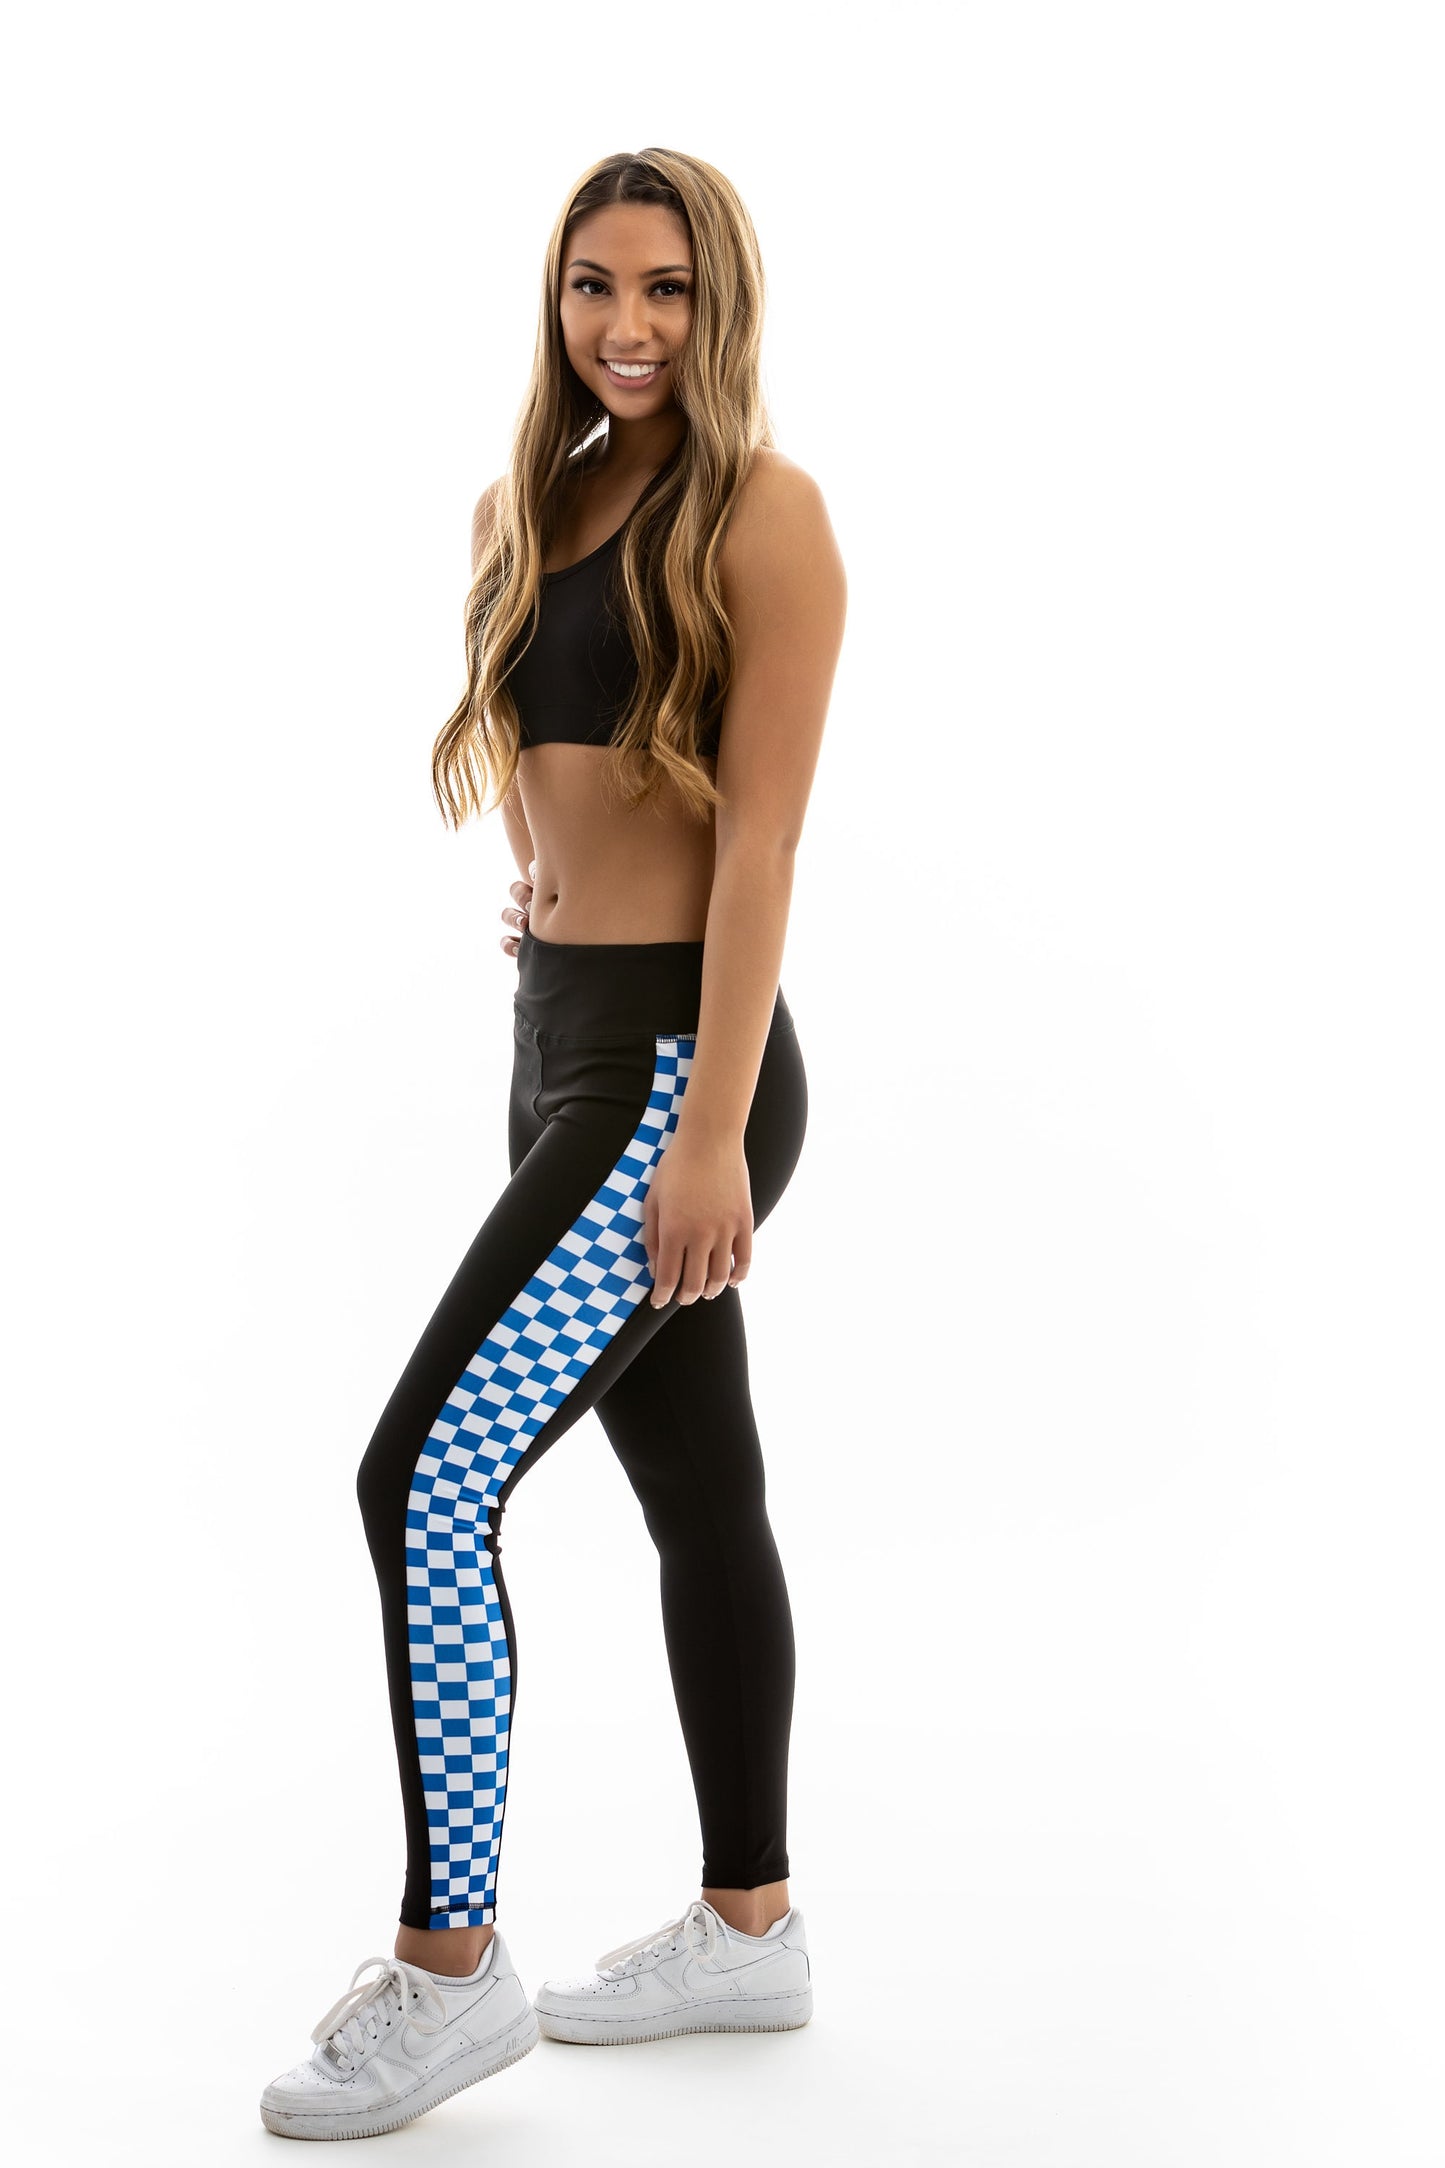 Blue and White Checkered Print Full Length Yoga Pant Leggings